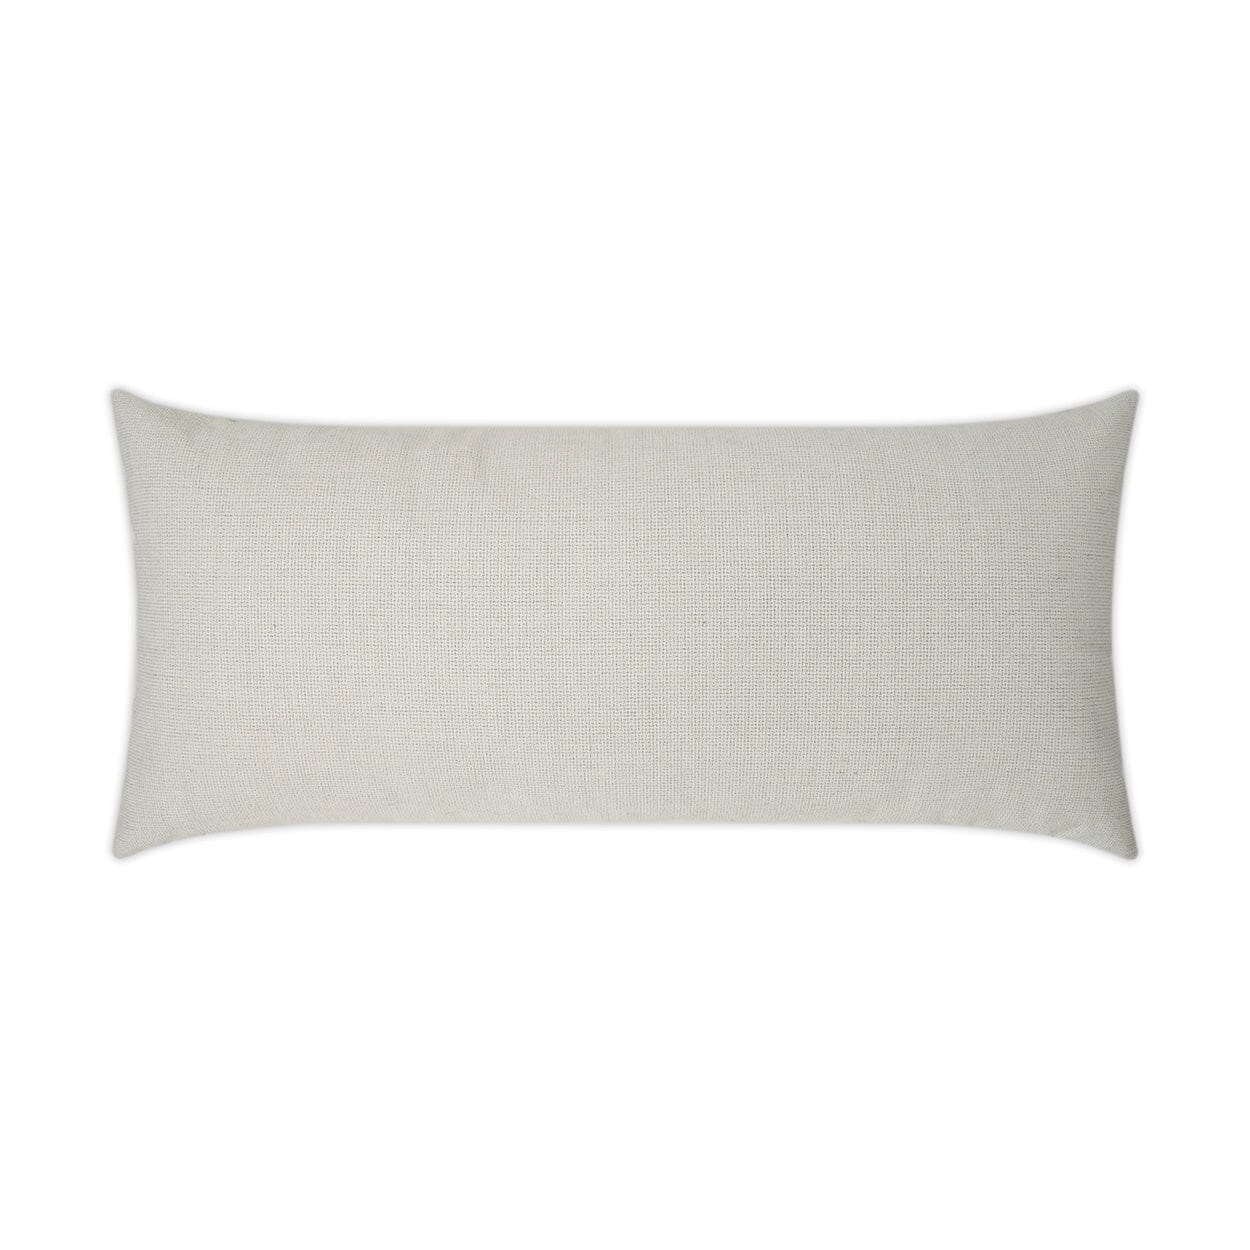 D.V. Kap 12" x 24" Outdoor Lumbar Pillow | Bliss Linen Pillows D.V Kap Outdoor